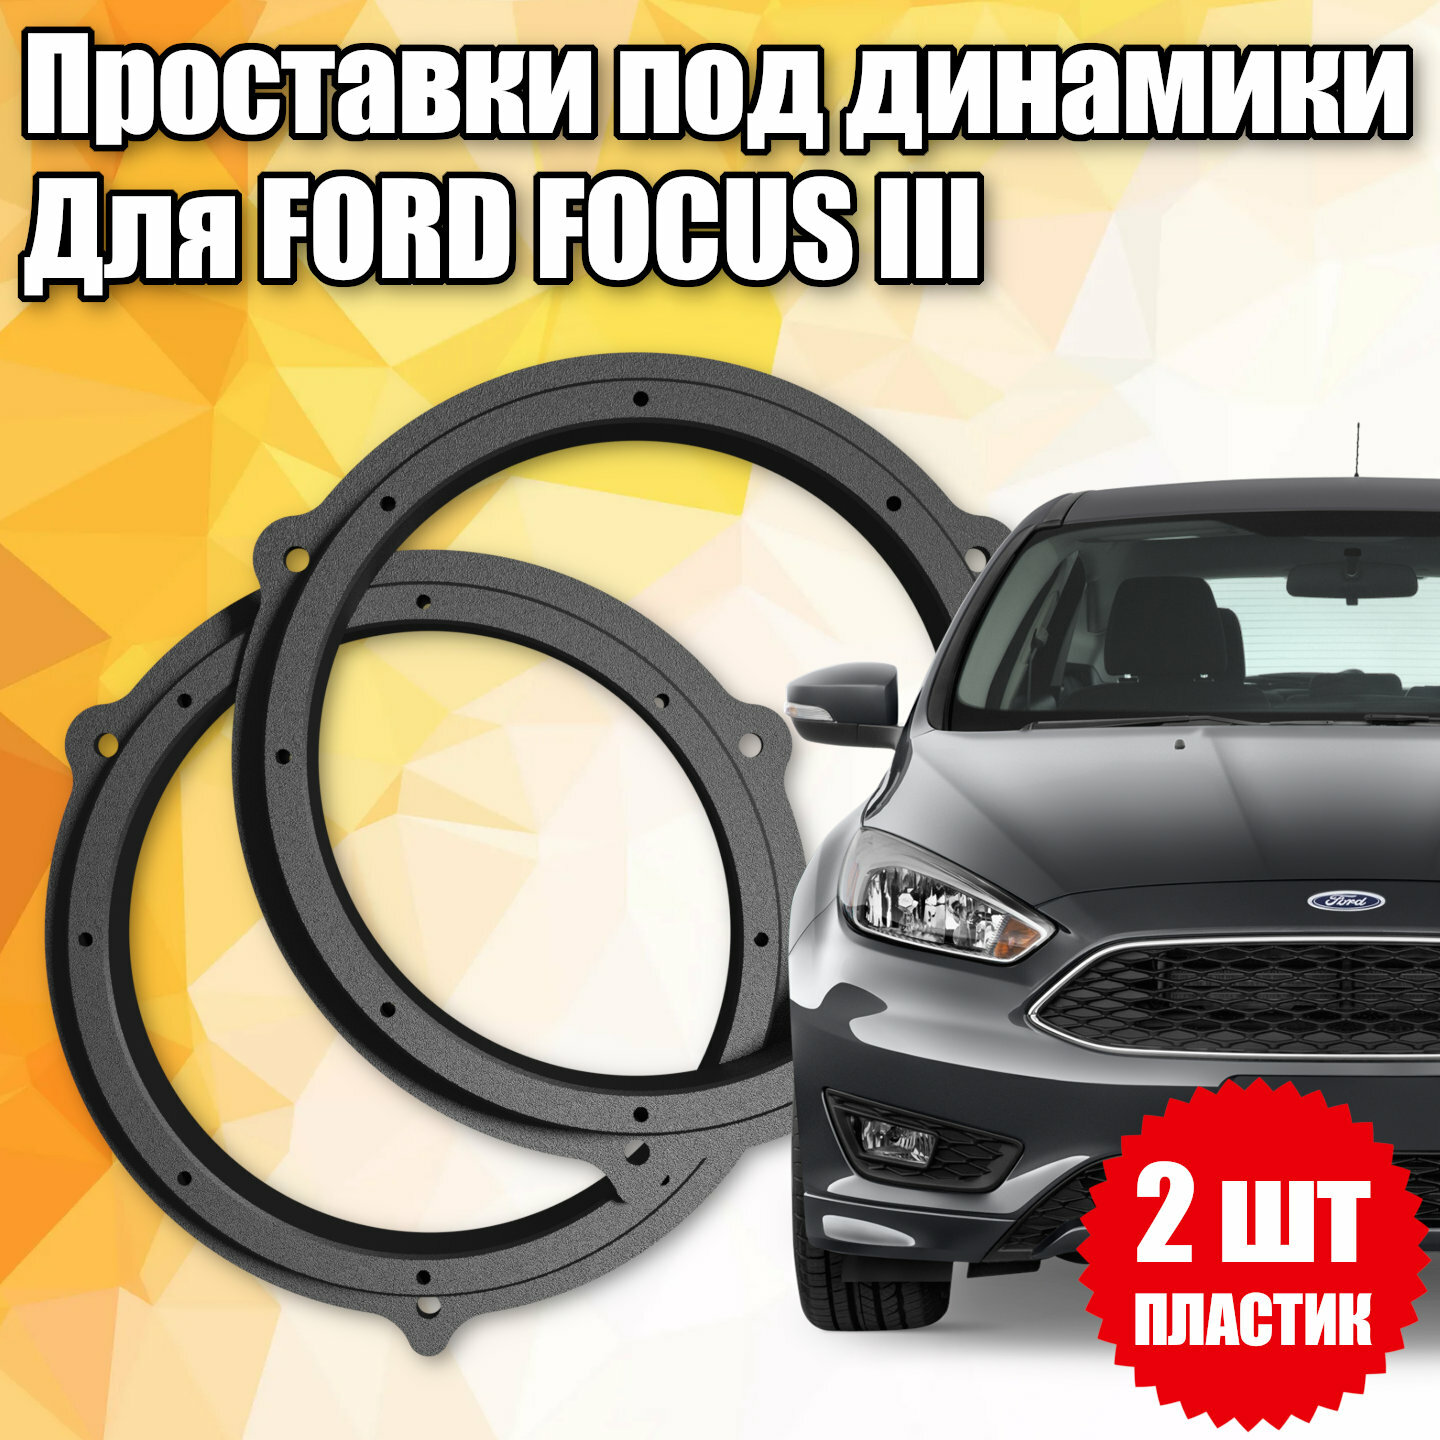 Проставки под динамики 16 см для Ford Focus III